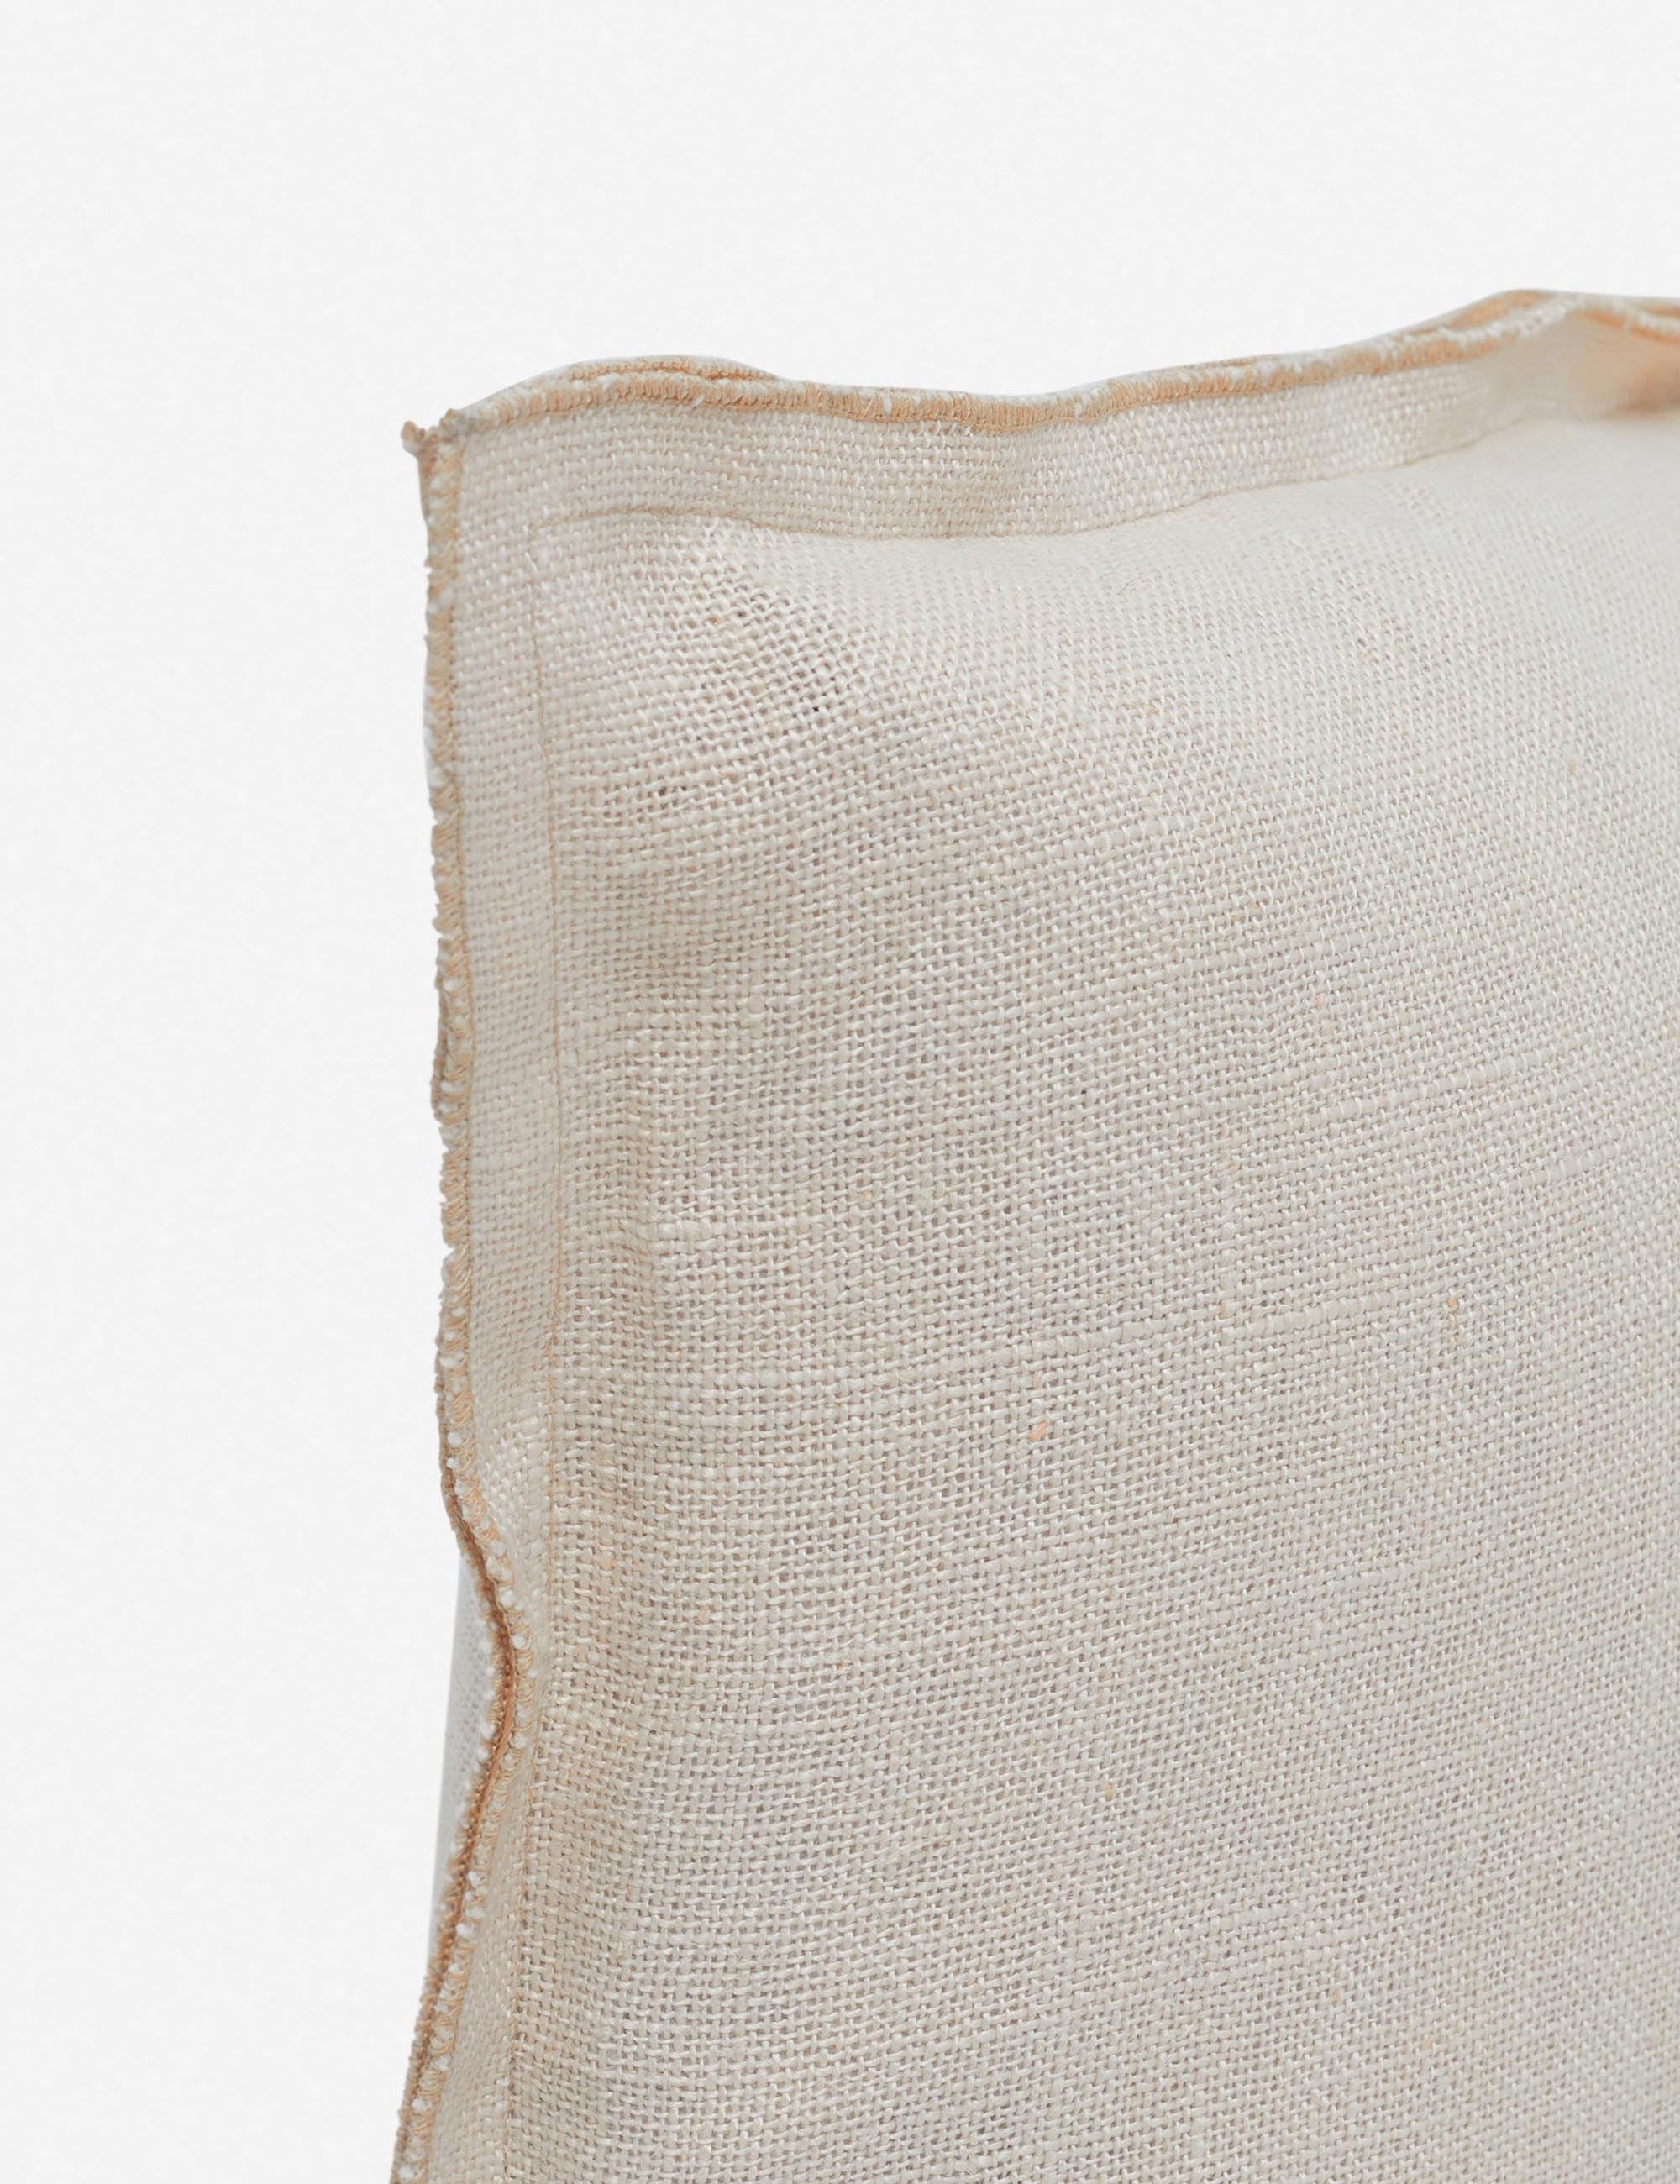 Arlo Linen Lumbar Pillow, Light Natural - Image 1